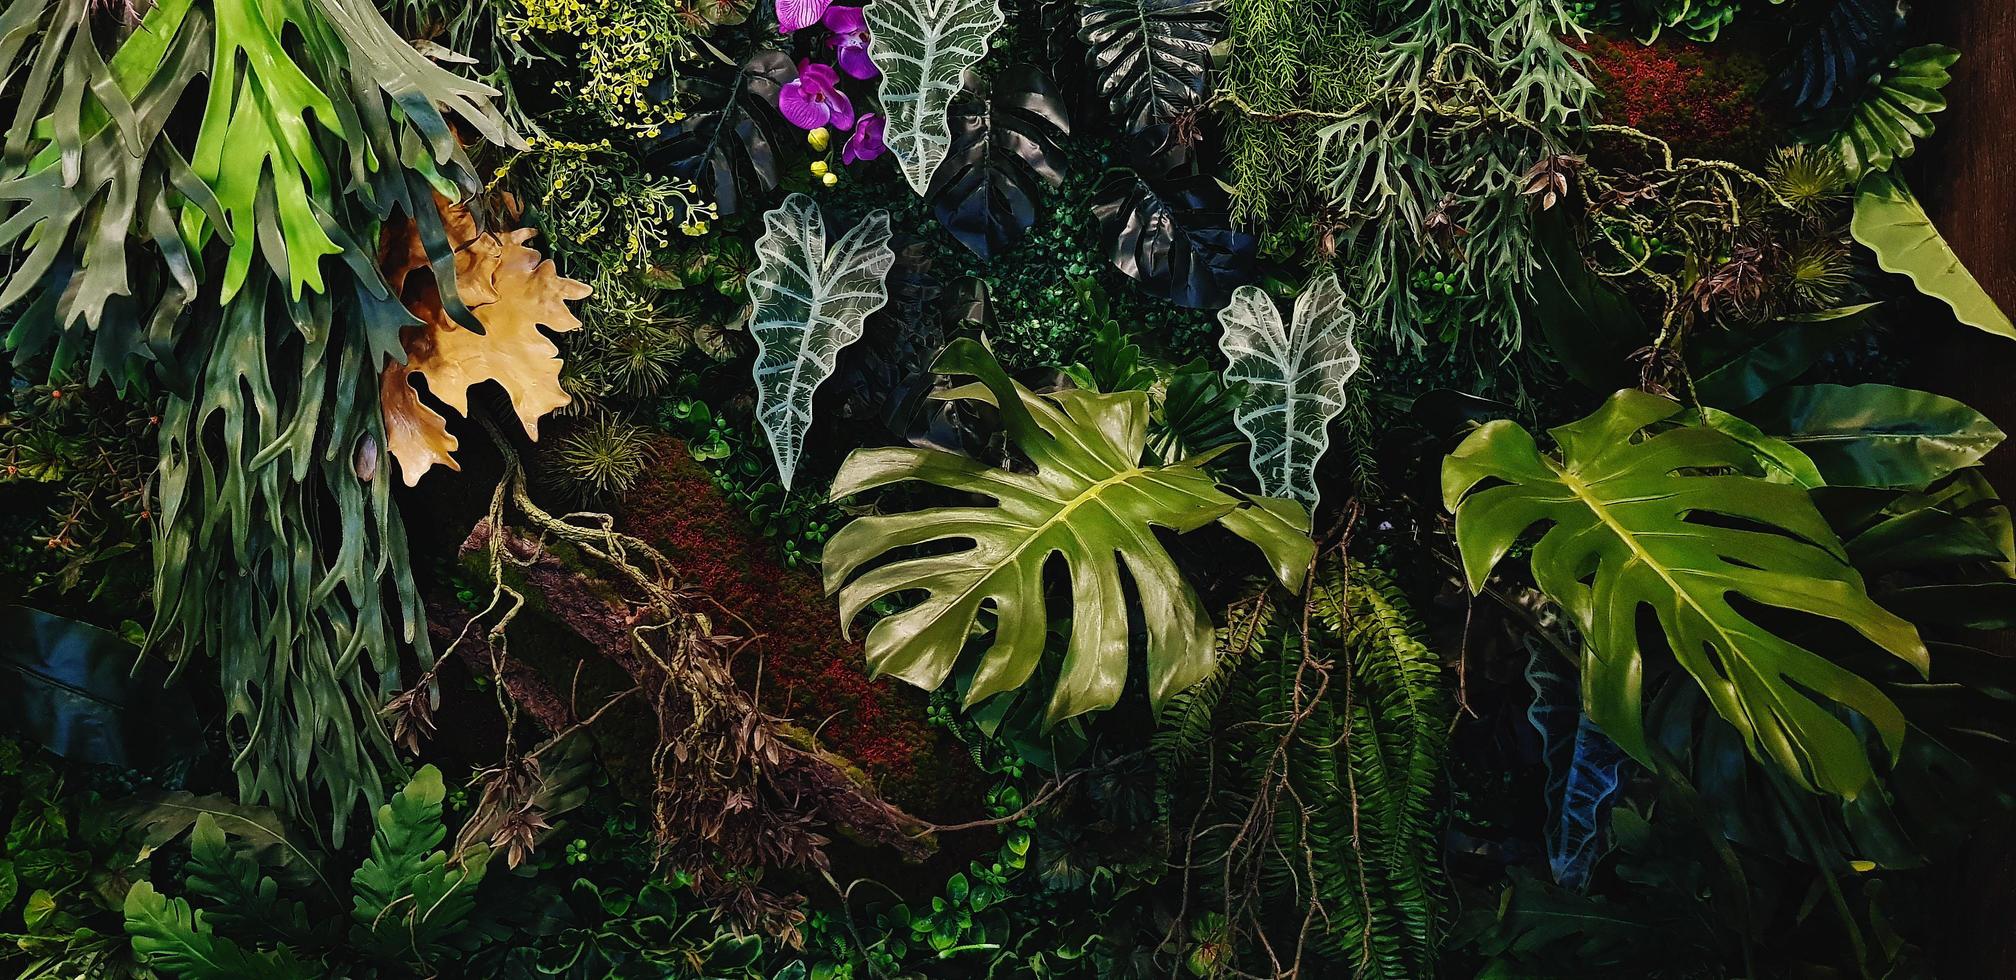 plante grimpante verte, vigne ou lierre, philodendron géant d'orchidée violette ou violette, et feuilles de monstère et mur de fleurs pour le fond. papier peint naturel ou motif nature. fraîcheur photo